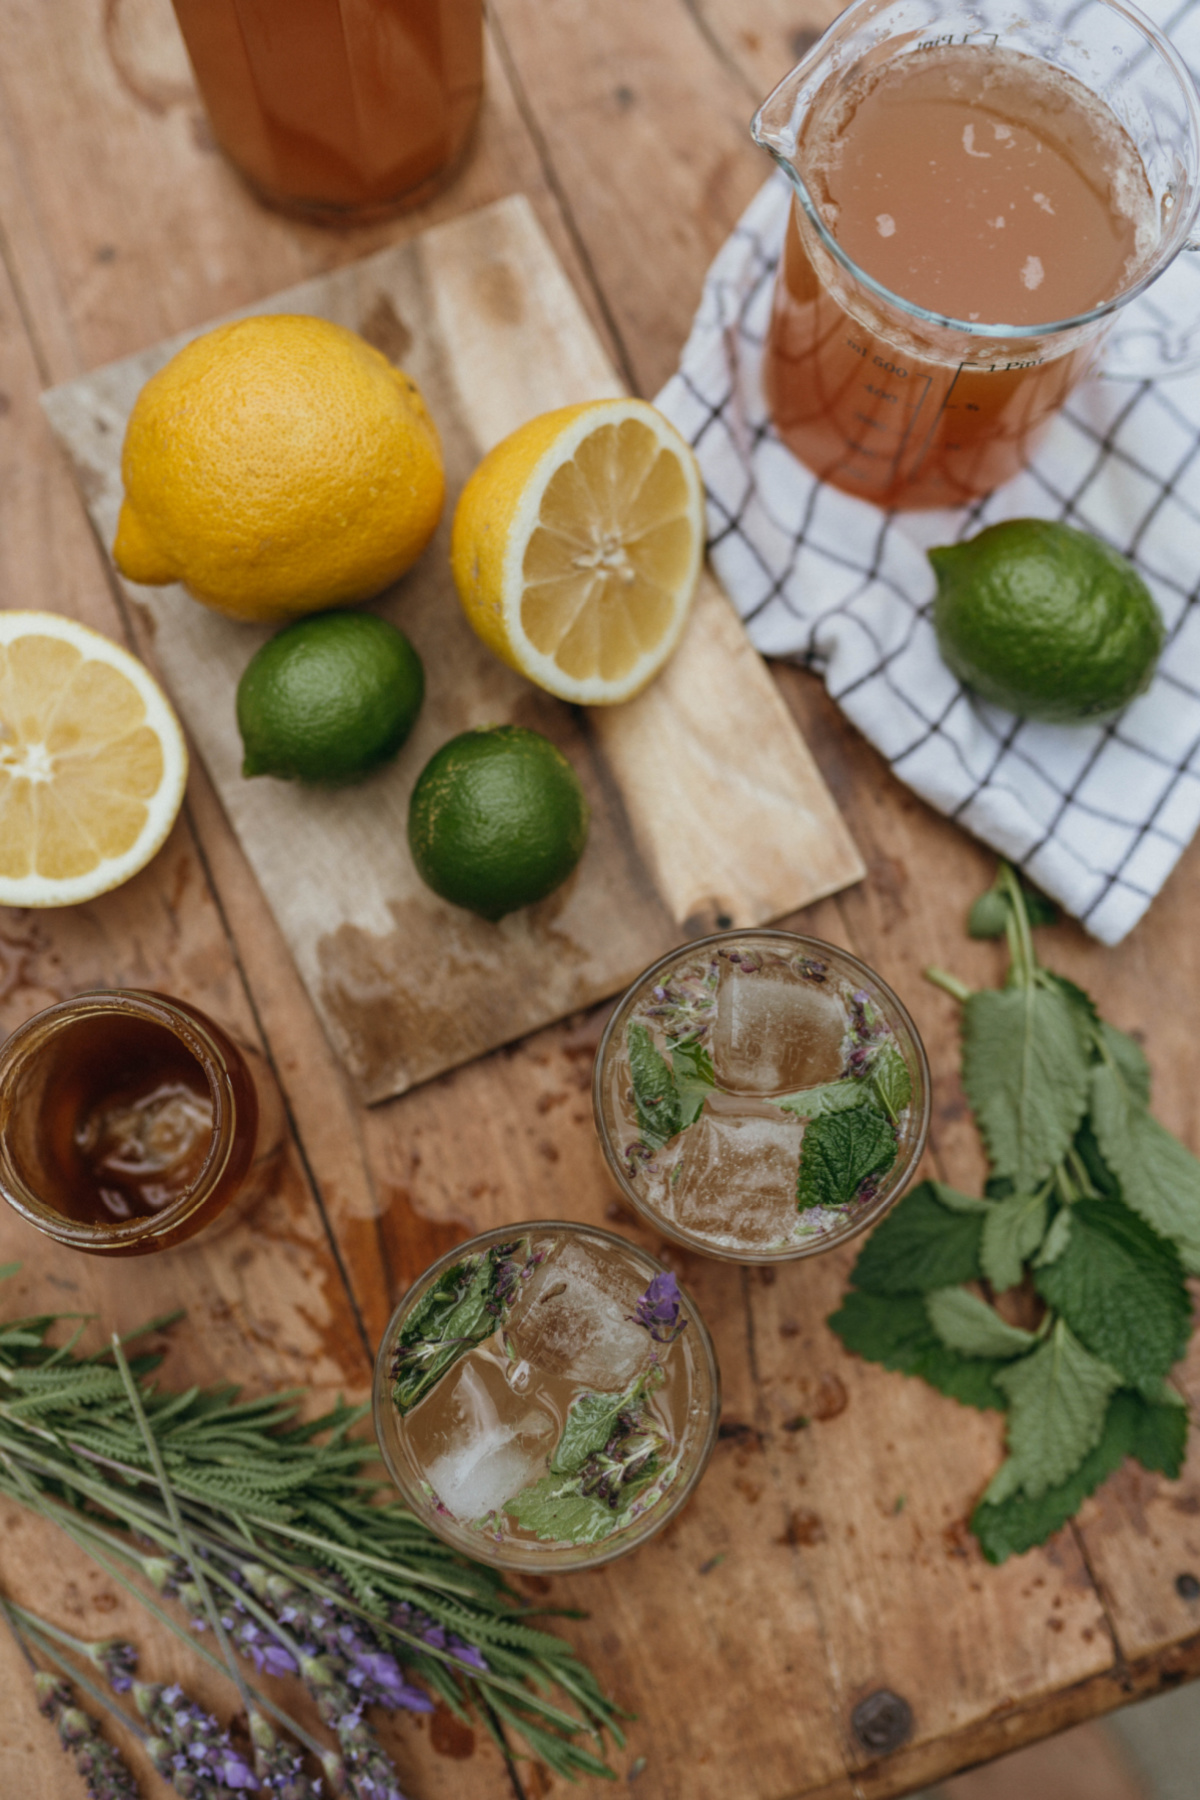 ingredients to make herbal lemonade